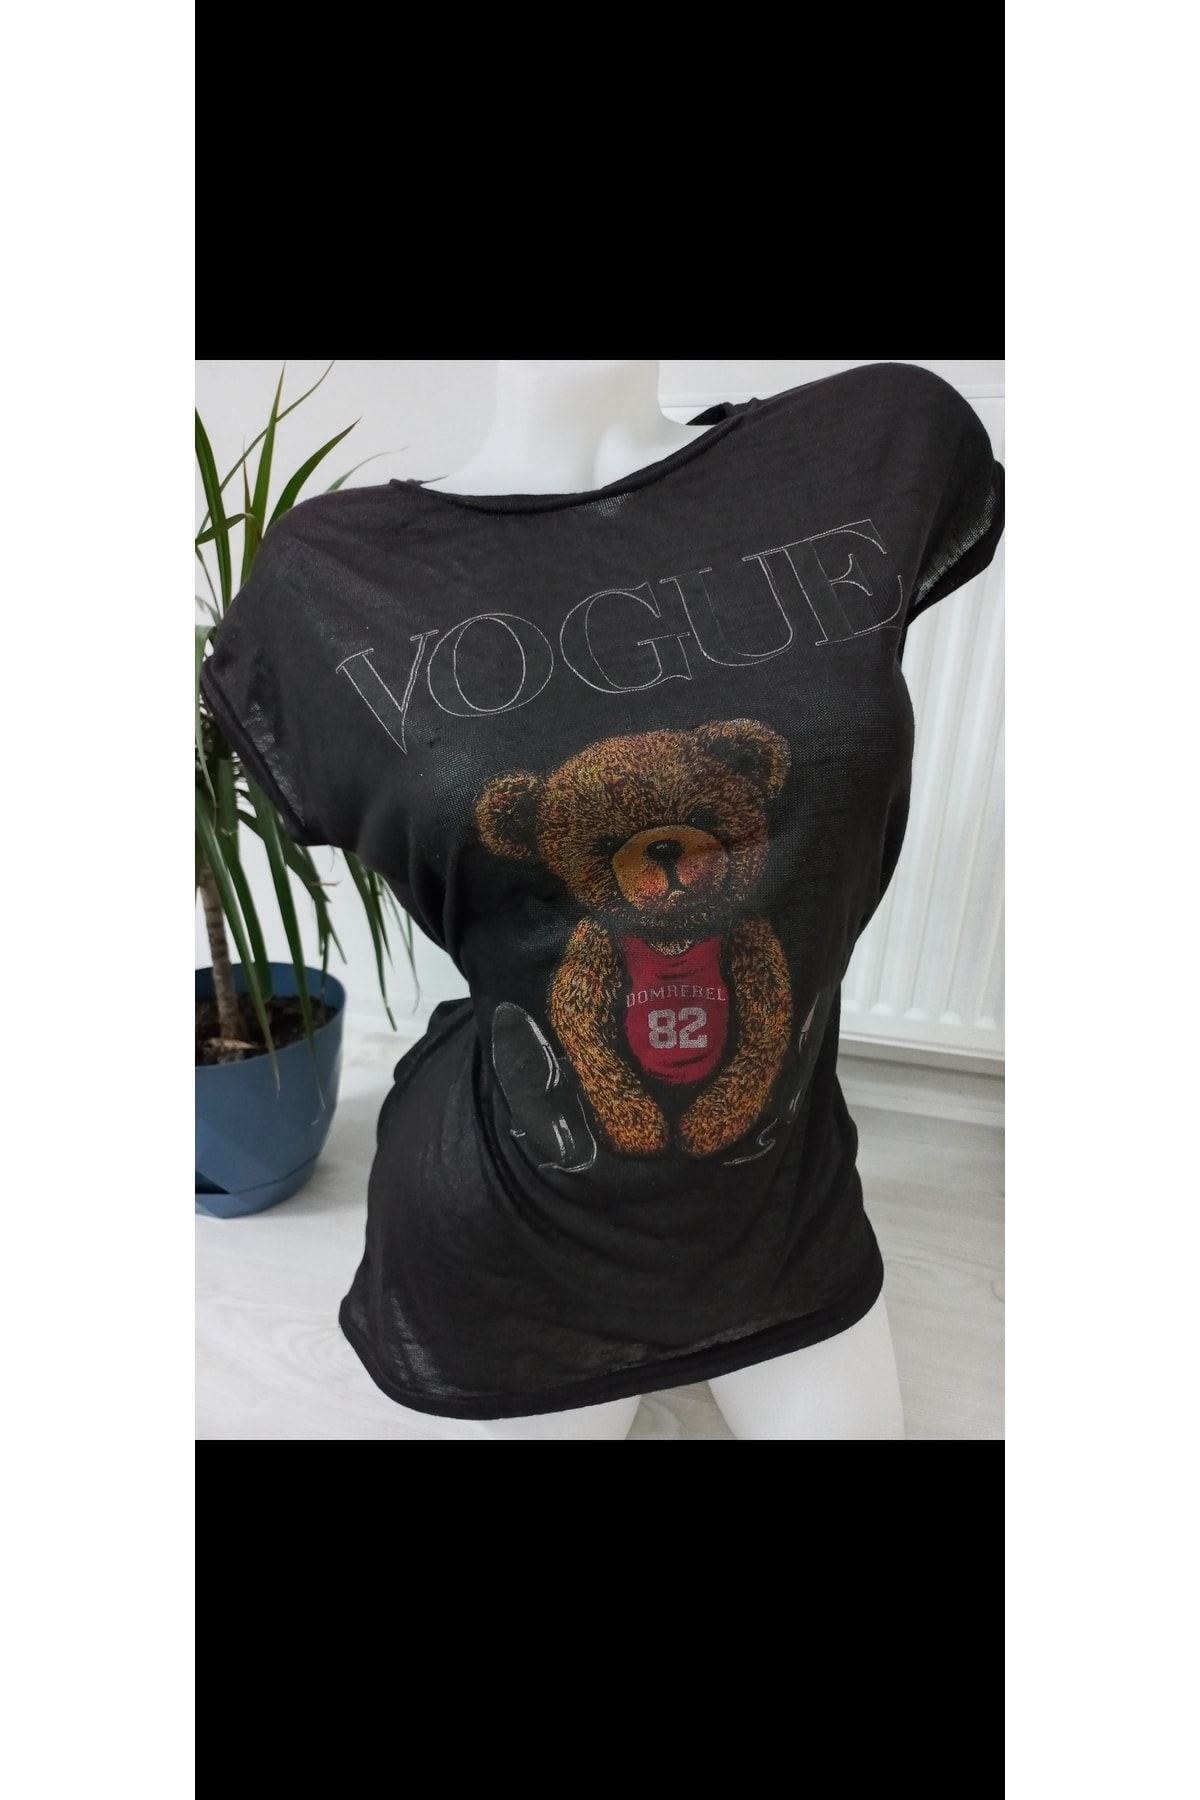 Vogue Tişört Ayıcık Desenli